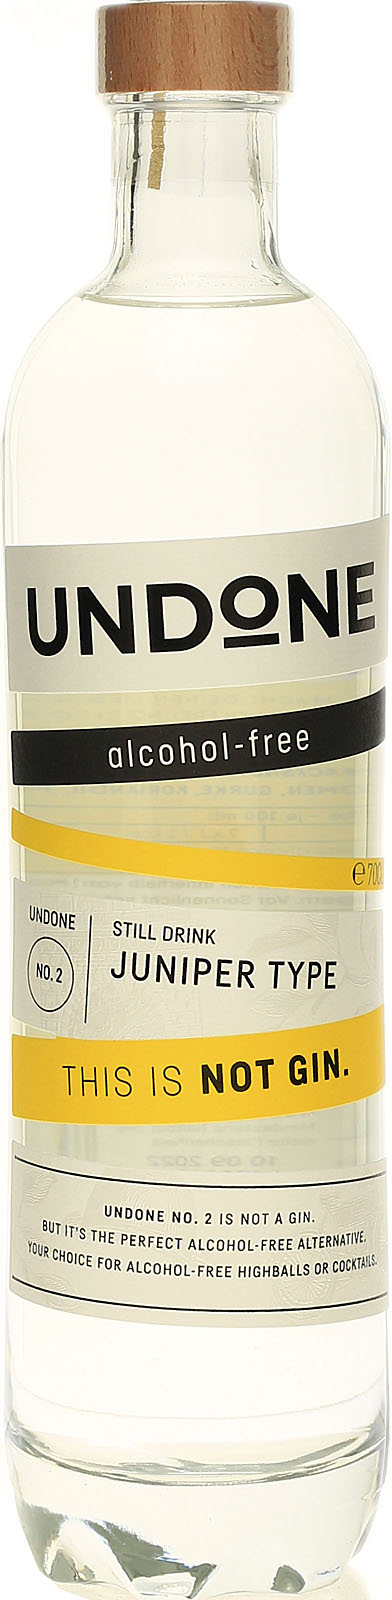 Undone No. 2 Juniper Type - Not Gin - hier kaufen